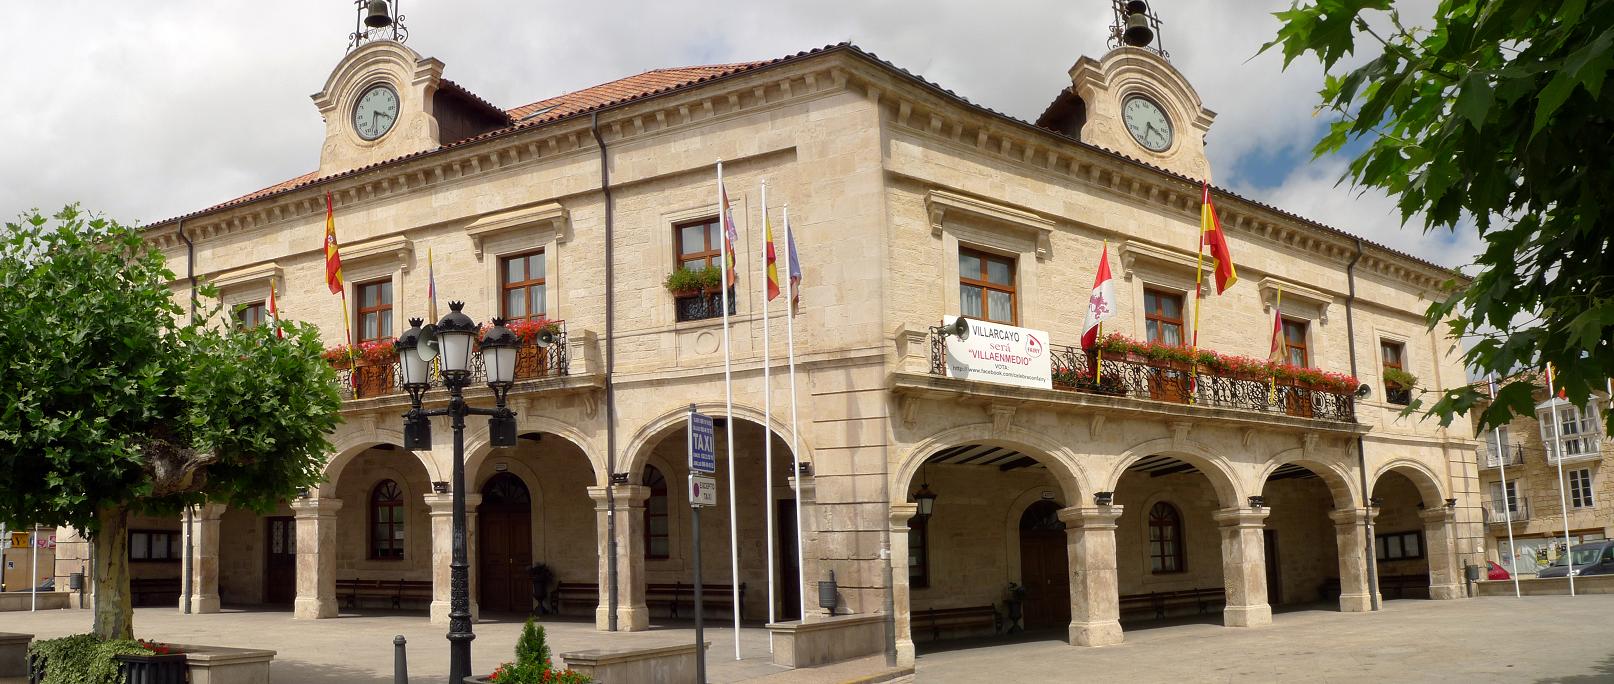 Foto: Casa Consistorial - Villarcayo (Burgos), España